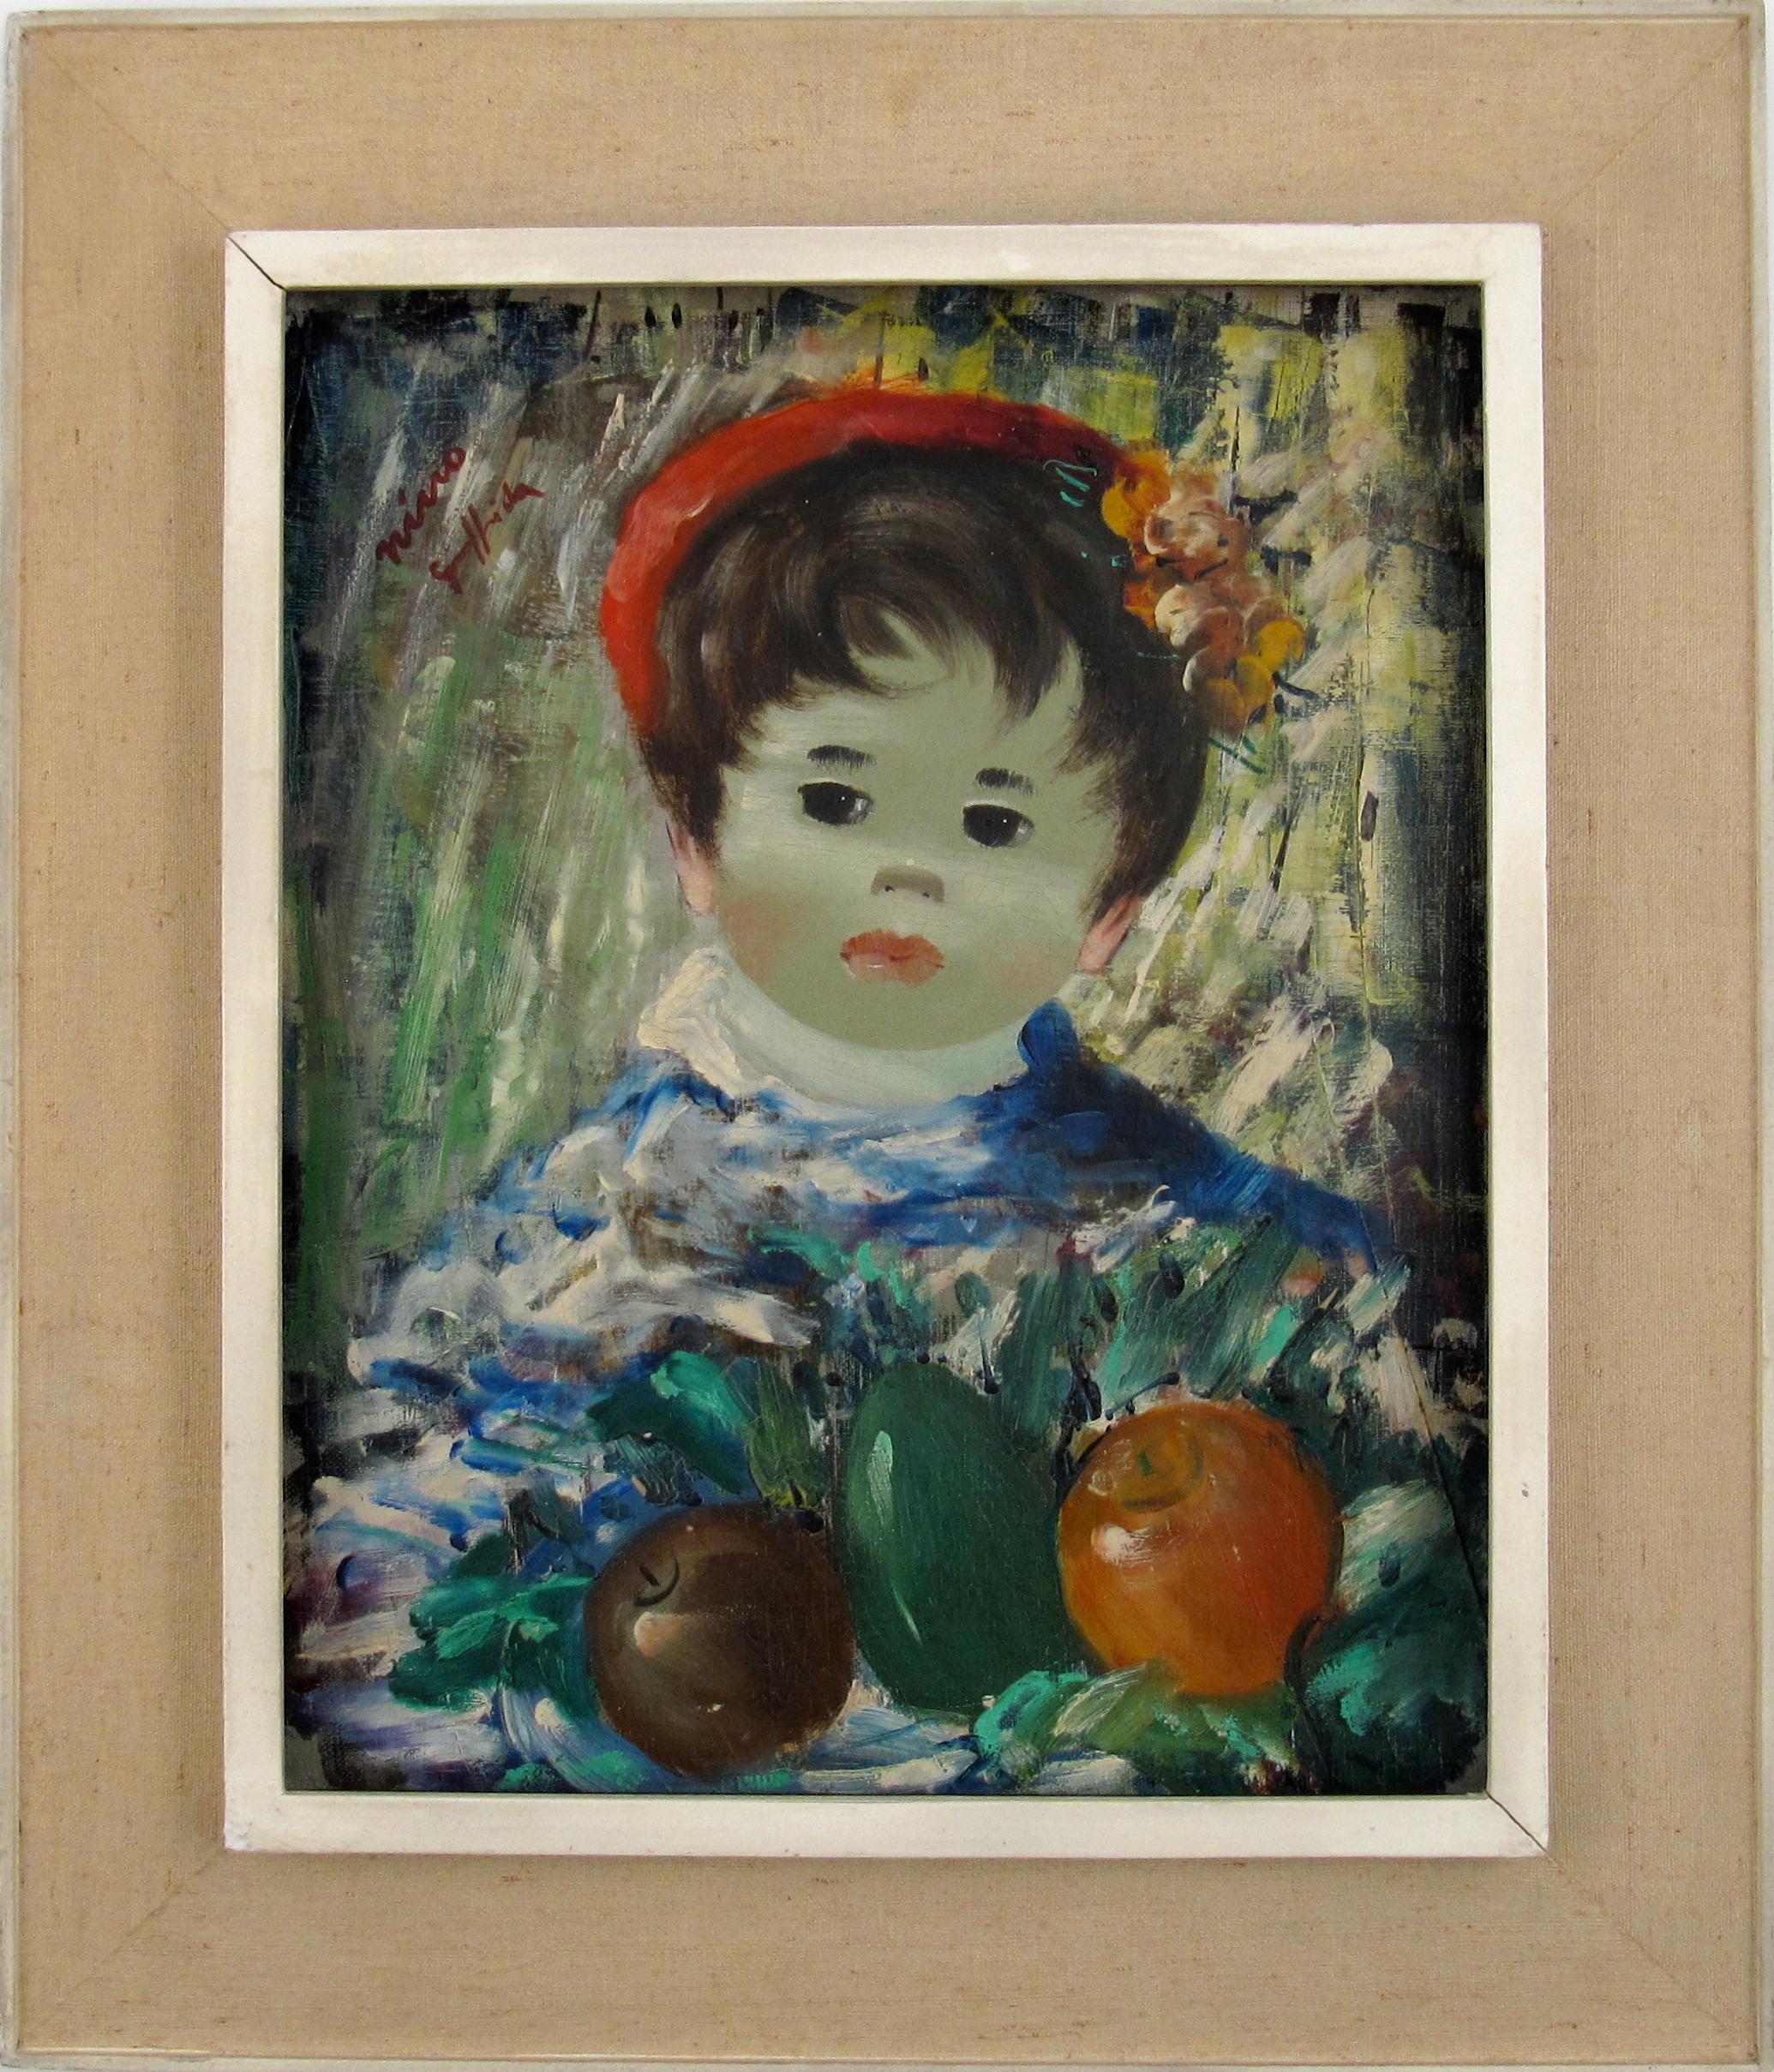 Portrait Painting Nino Giuffrida - Garçon avec des Fruit - Boy with Fruit - Huile sur toile - Peinture naïve